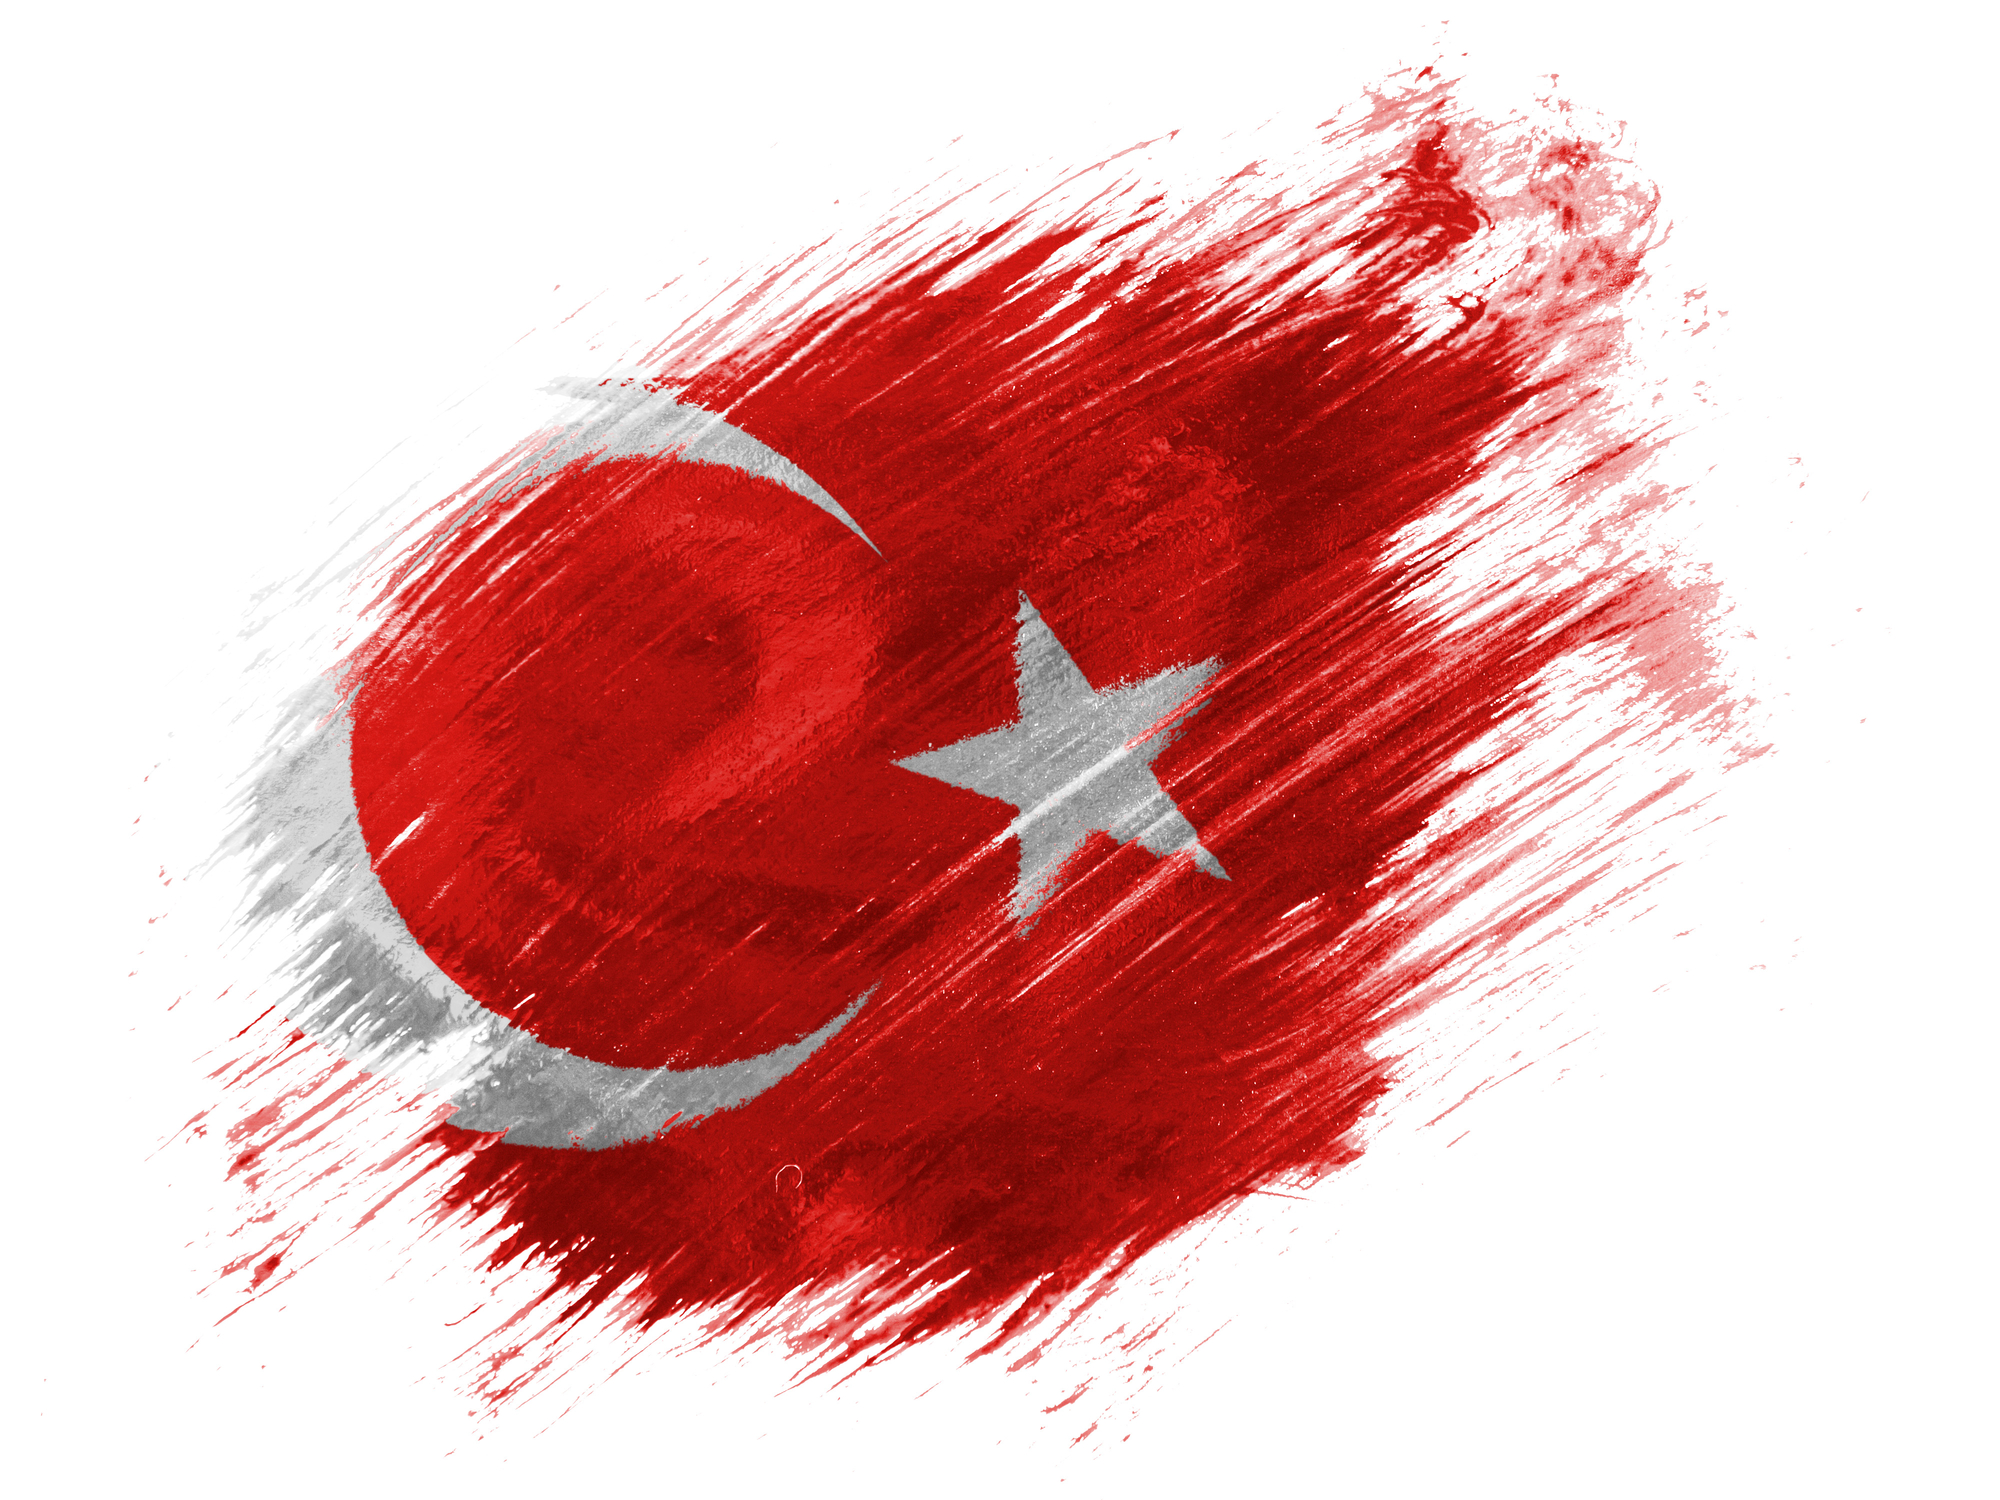 Török puccskísérlet, újabb 137 ember ellen adtak ki elfogatóparancsot gülenizmus miatt